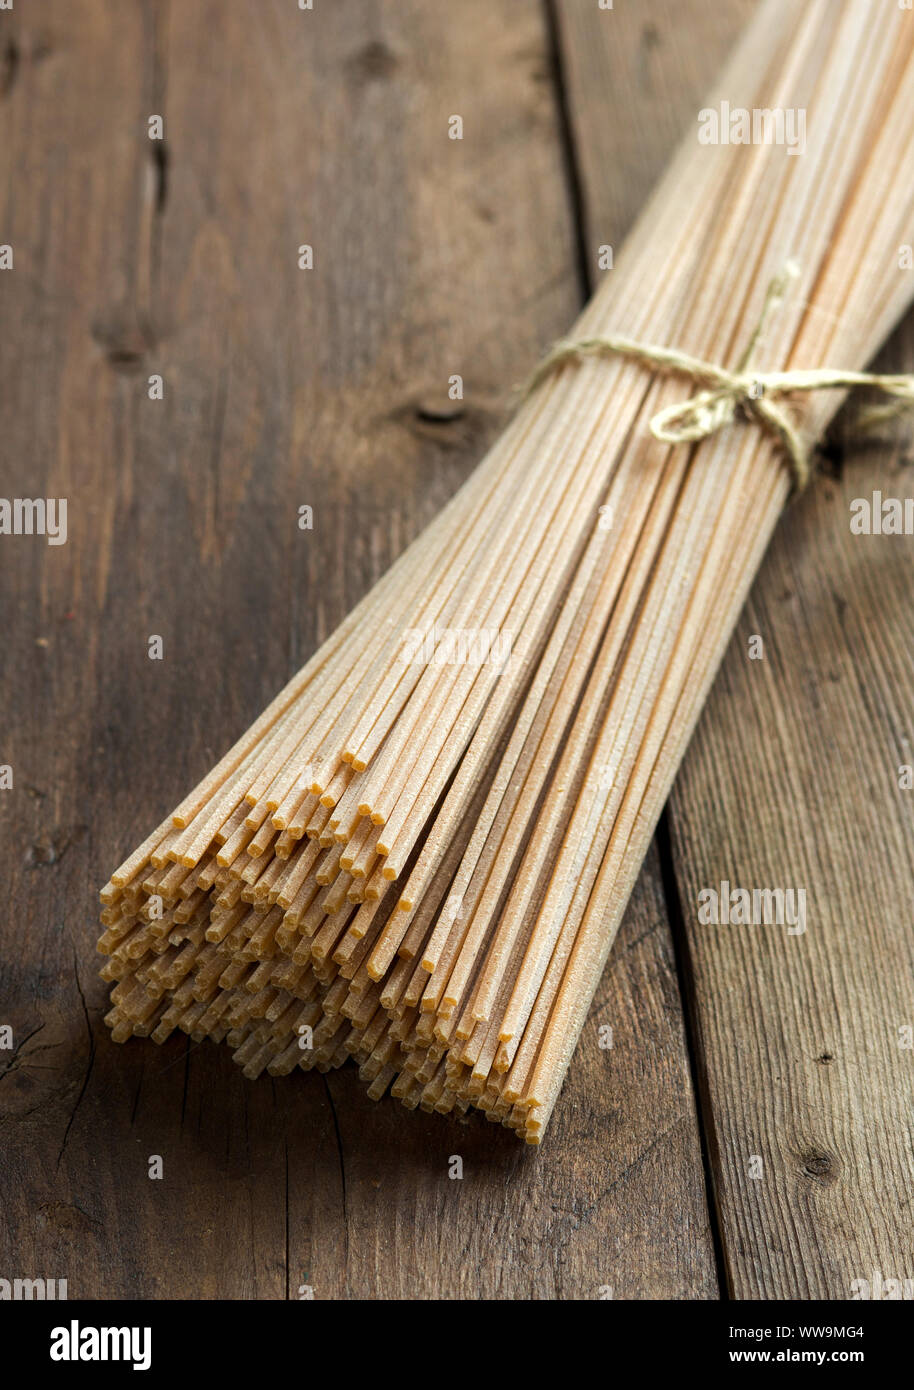 Vollkorn Spaghetti auf dem alten Holztisch Stockfoto